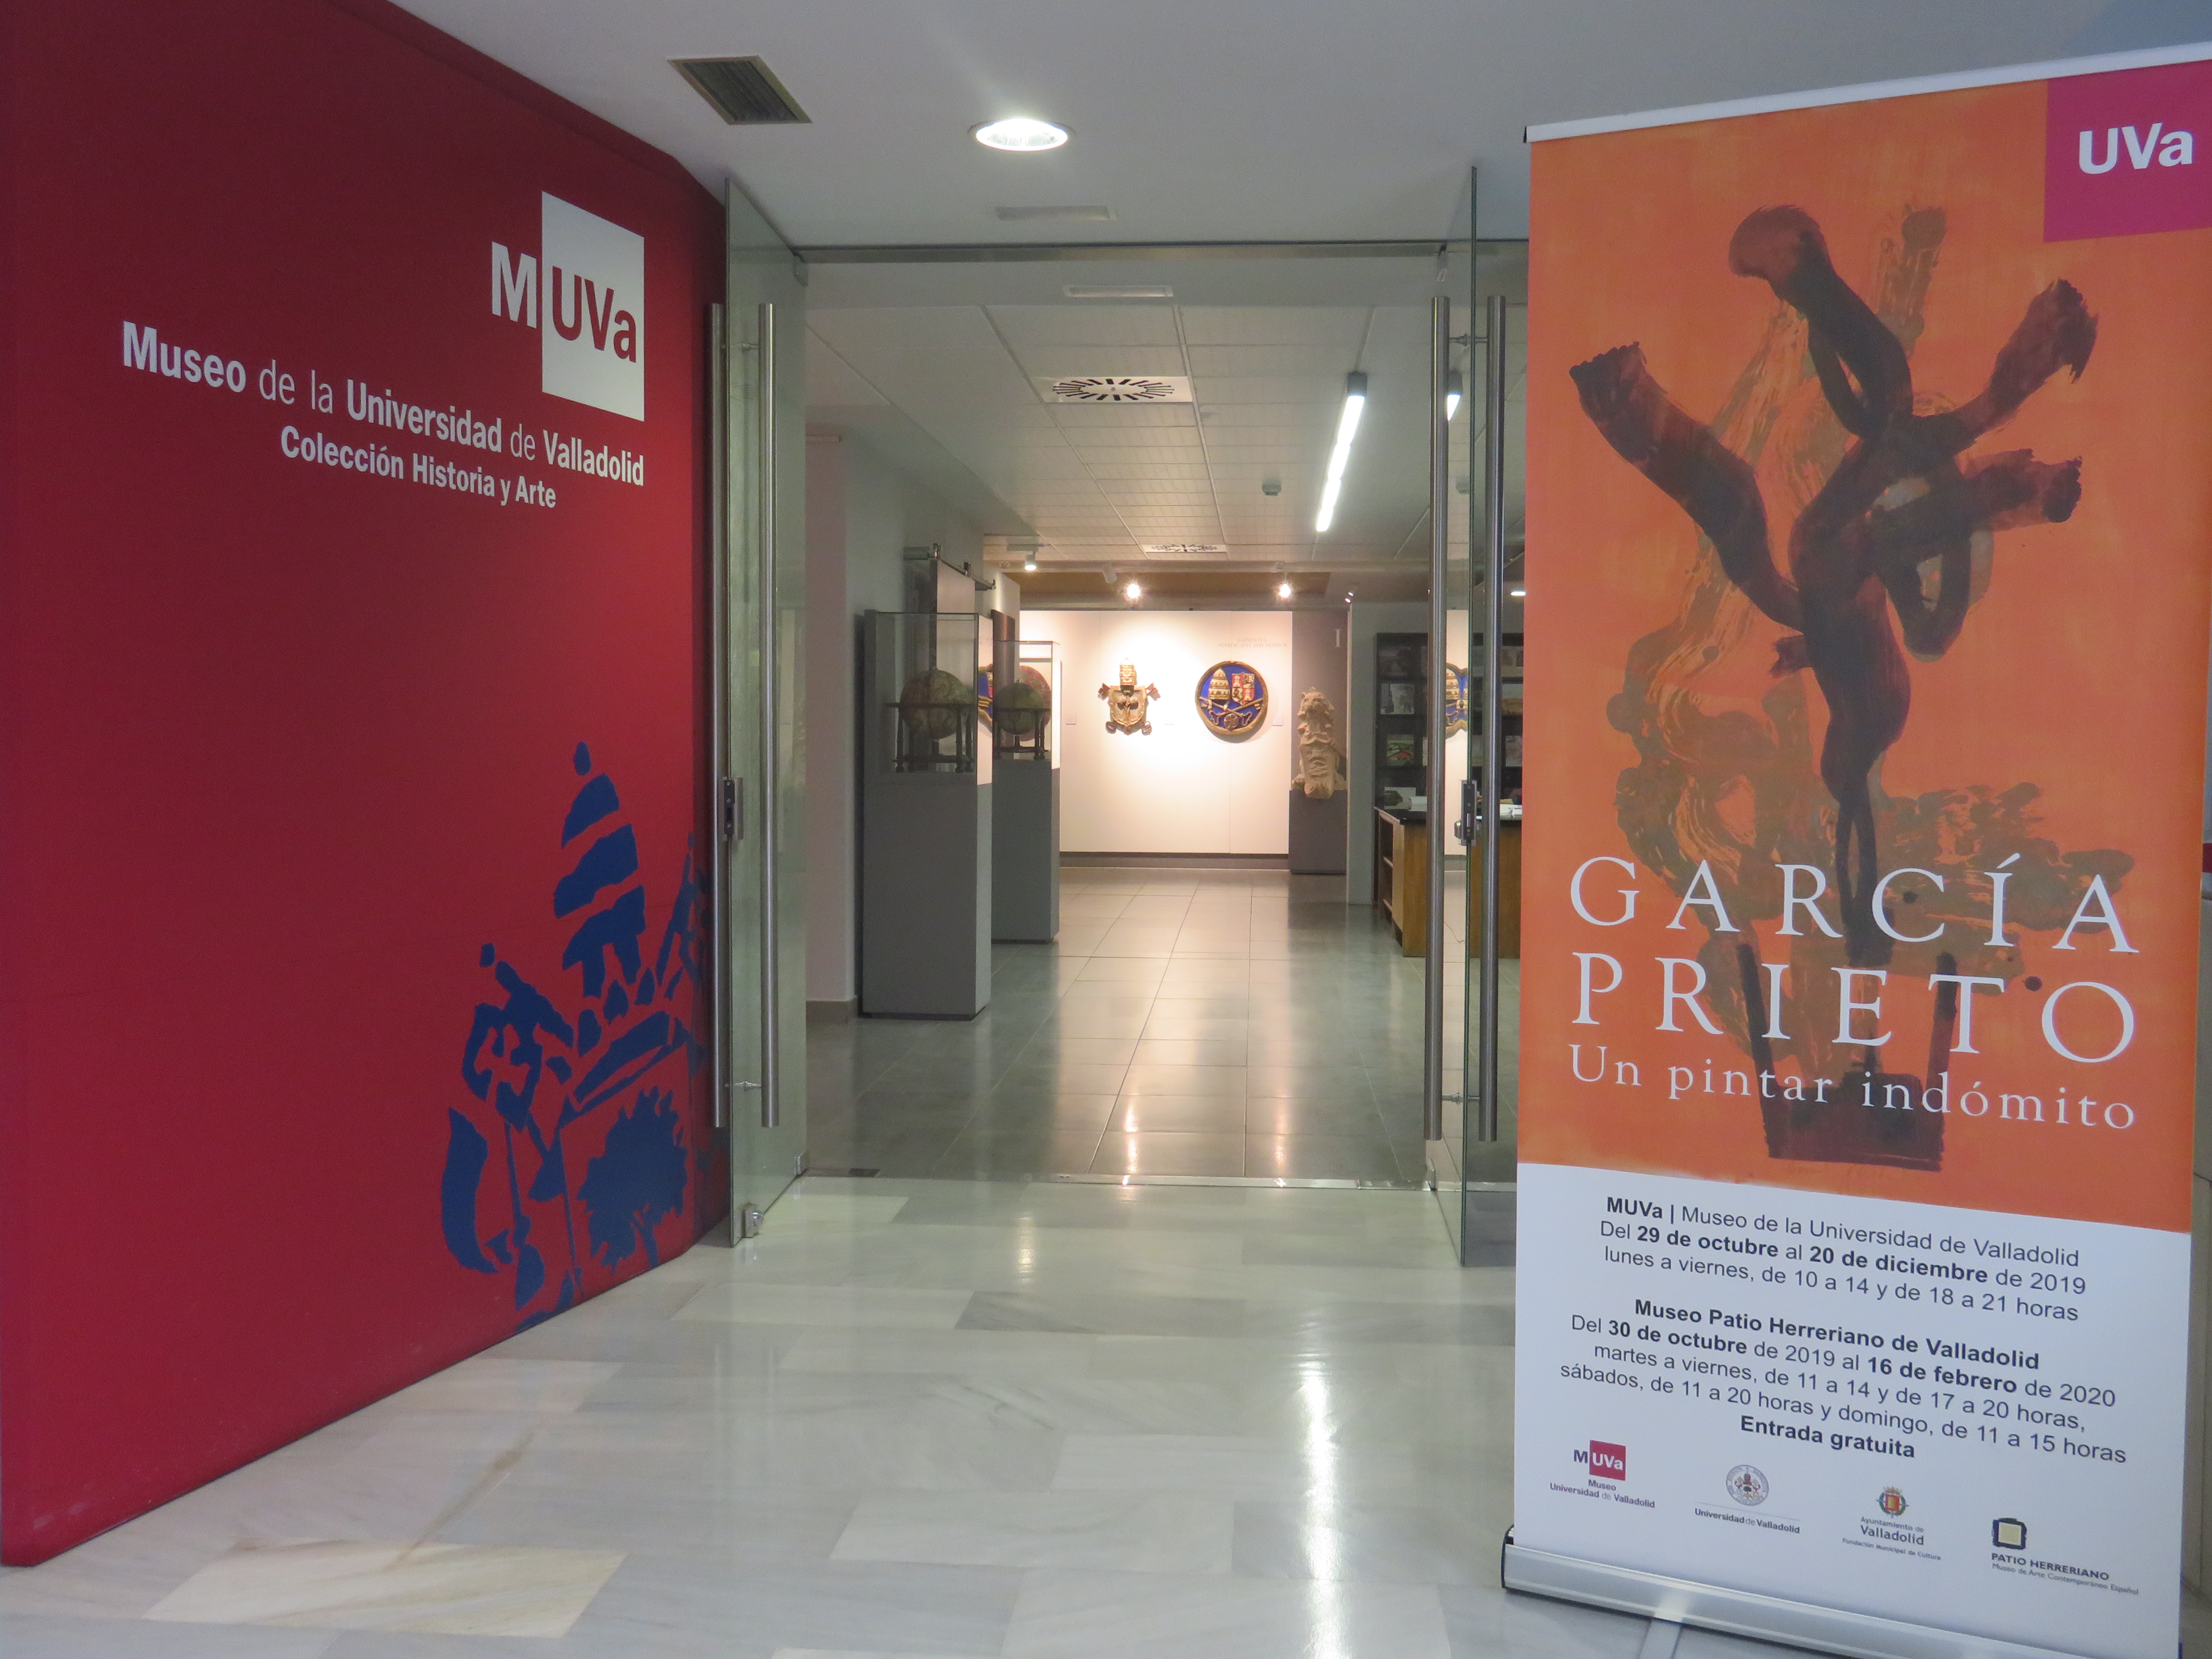 Exposición “Un pintar indómito”, del vallisoletano Javier García Prieto, en el MUVa